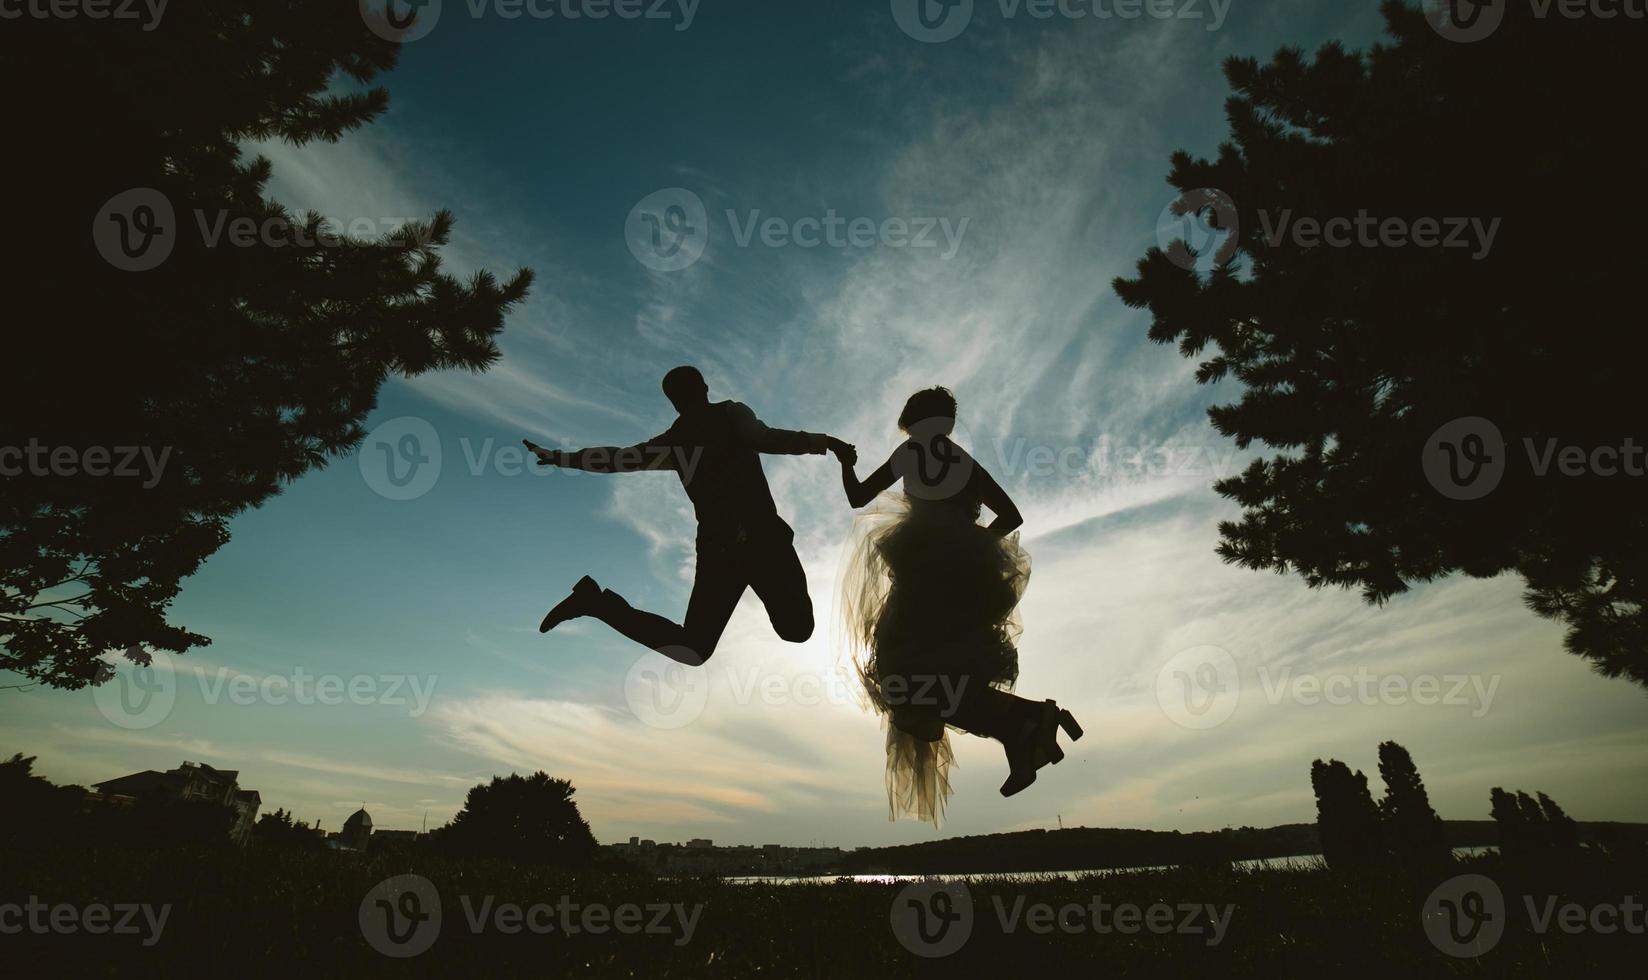 sposo e sposa salto contro il bellissimo cielo foto